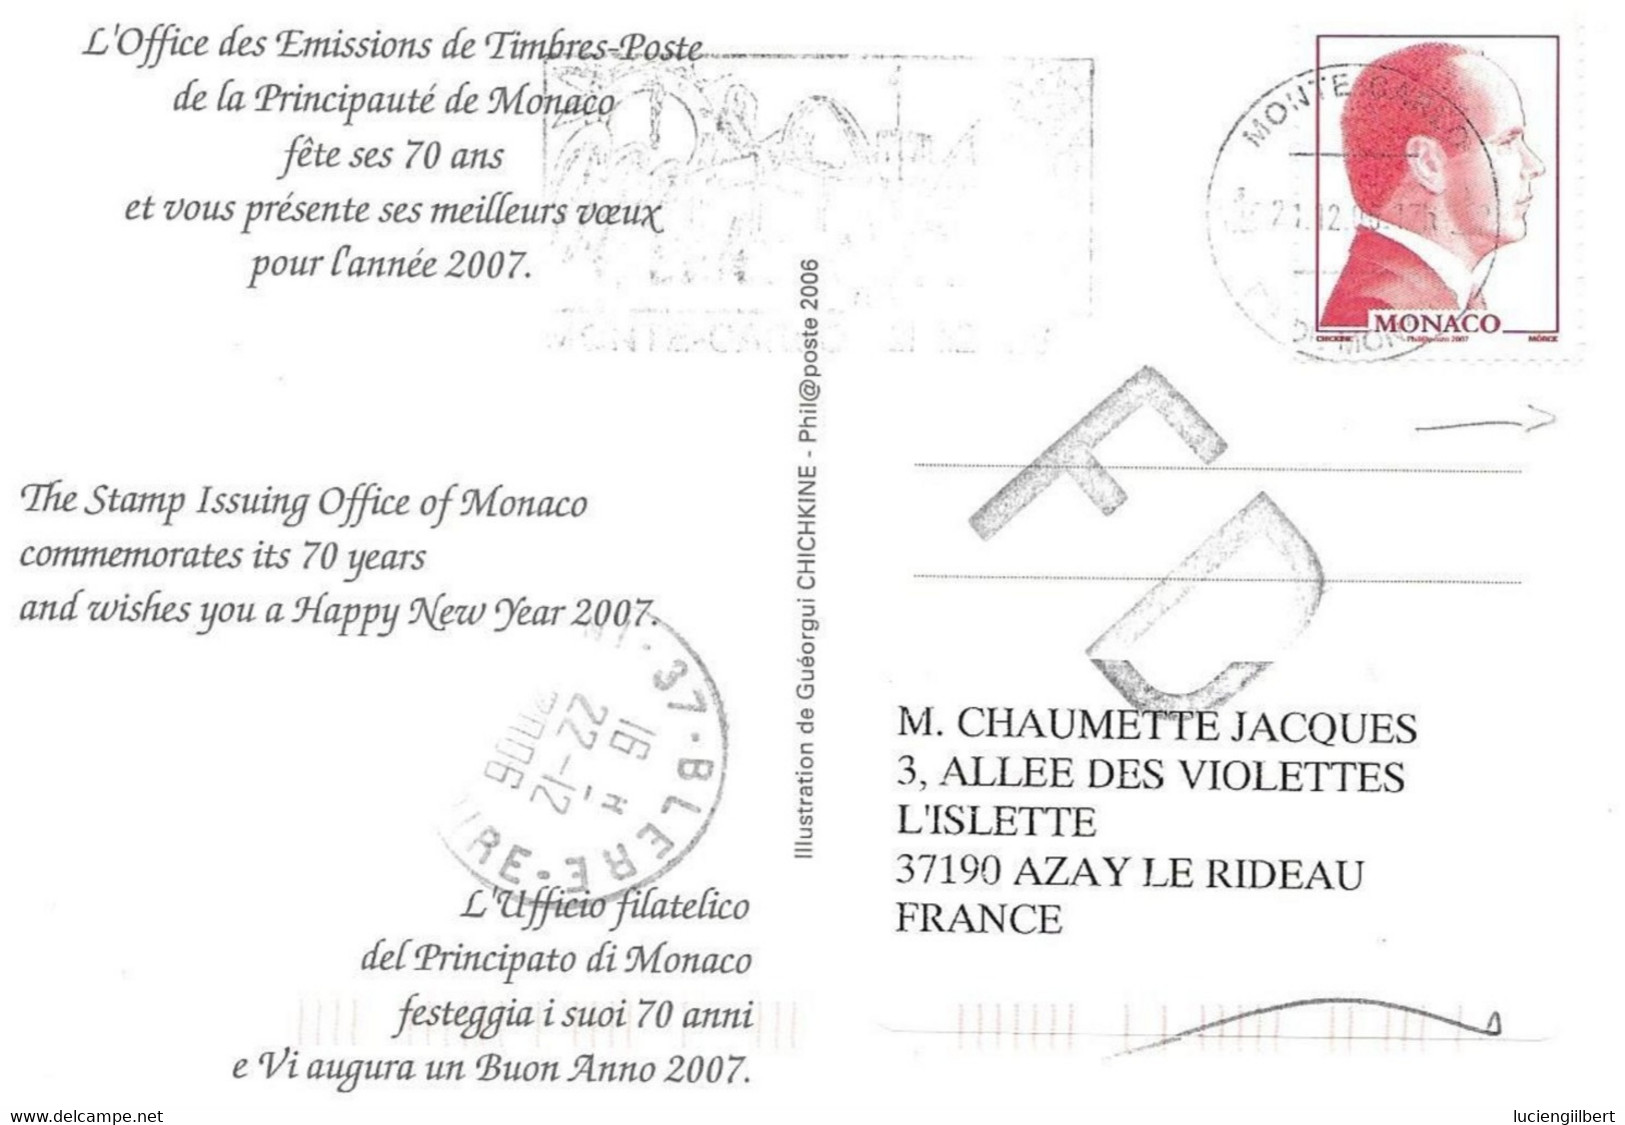 MONACO  -   MONTE CARLO  -   TIMBRE N° 2562 -   TARIF DU 1 10 06 AU 28 2 08 -  -  2006 - GRAVURE S.A.S. PRINCE ALBERT II - Briefe U. Dokumente